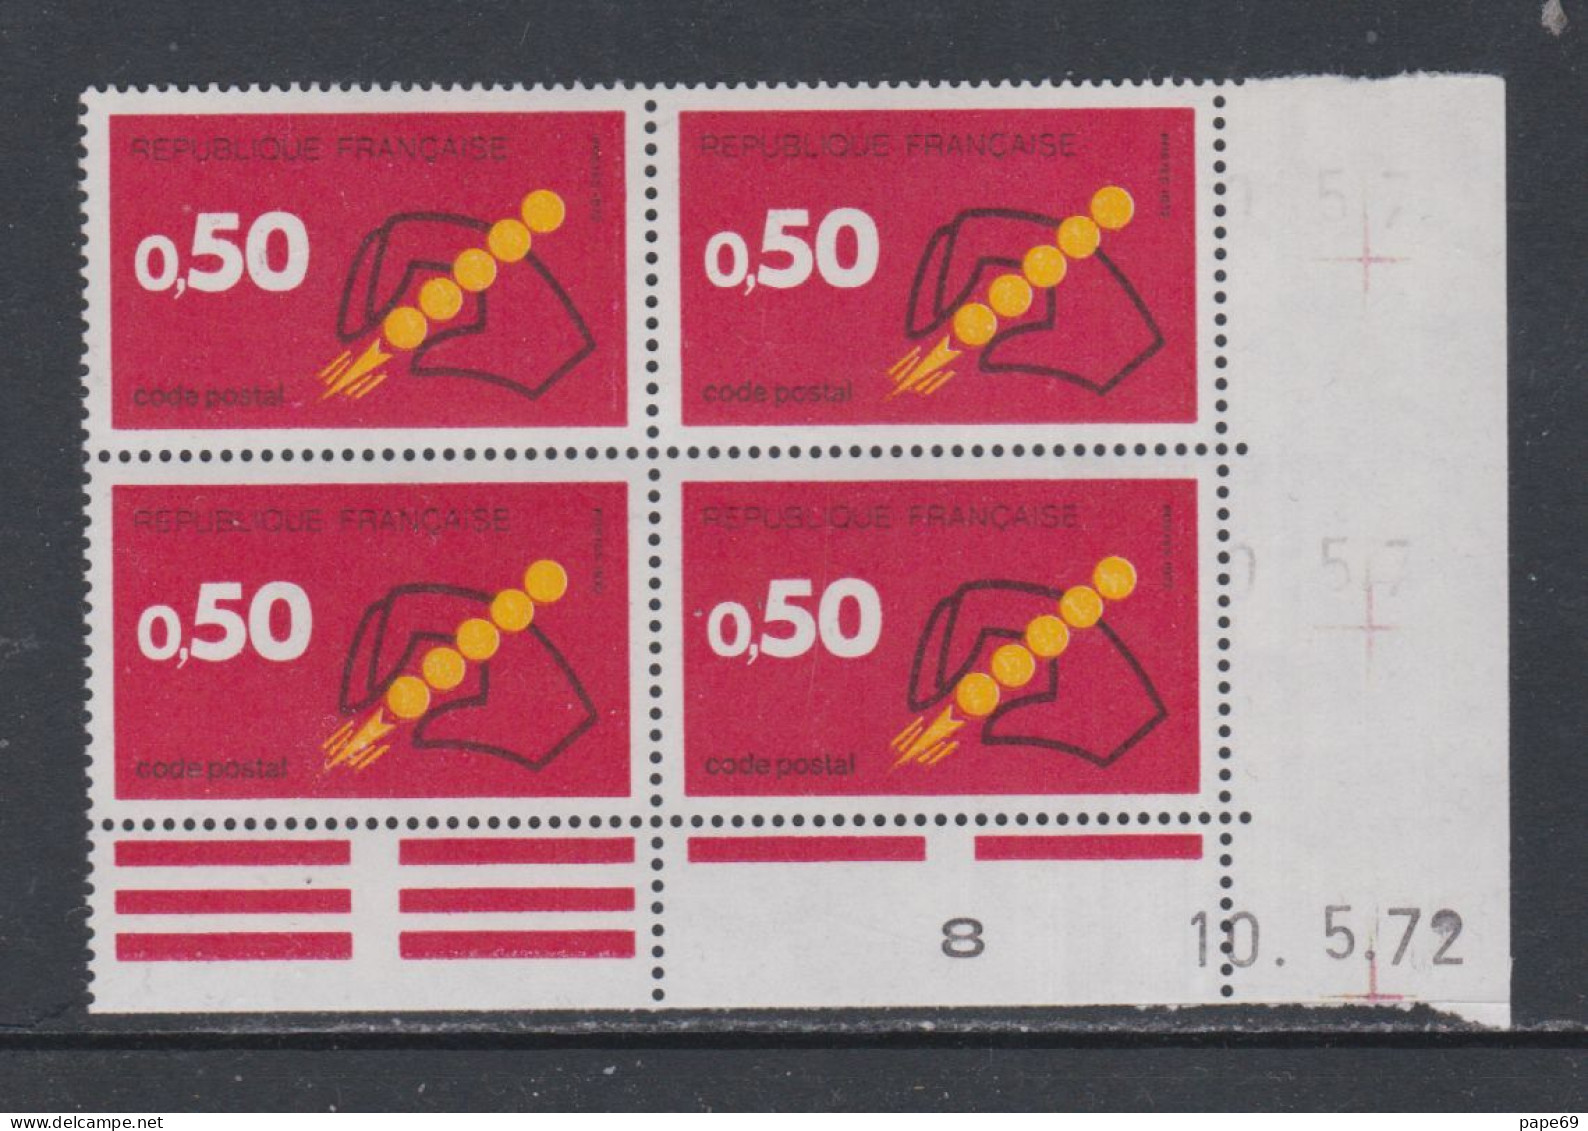 France N° 1720 XX Code Postal : 50 C. Rouge Et Jaune En Bloc De 4 Coin Daté Du  10 . 5 . 72 ; Sans Charnière, TB - 1970-1979